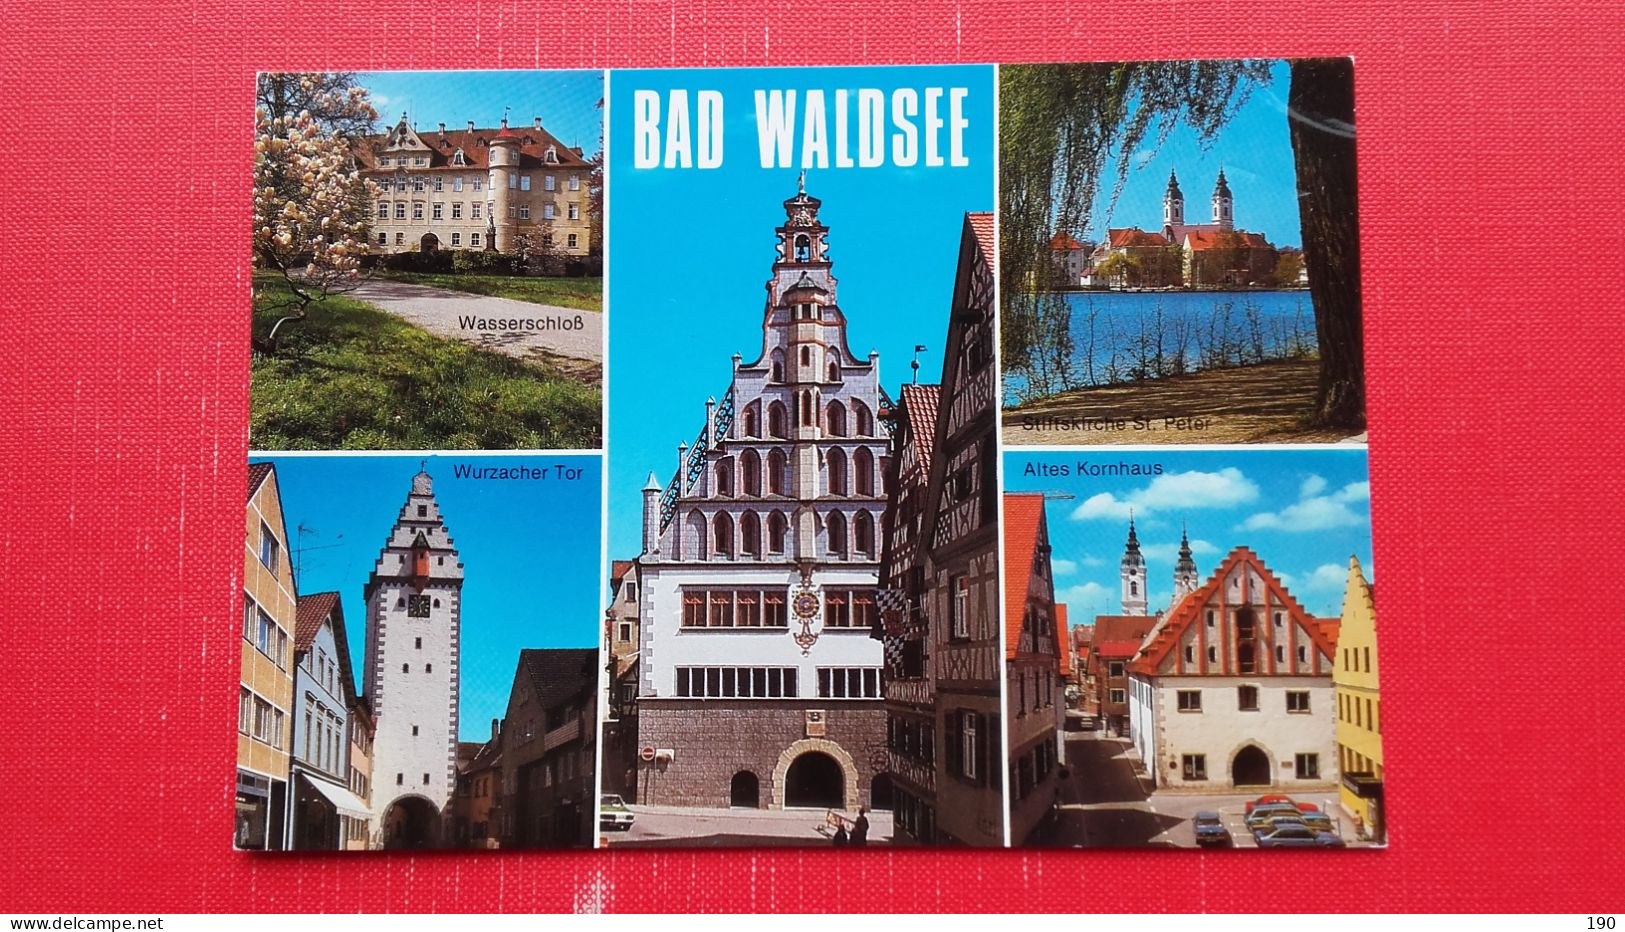 Bad Waldsee - Bad Waldsee